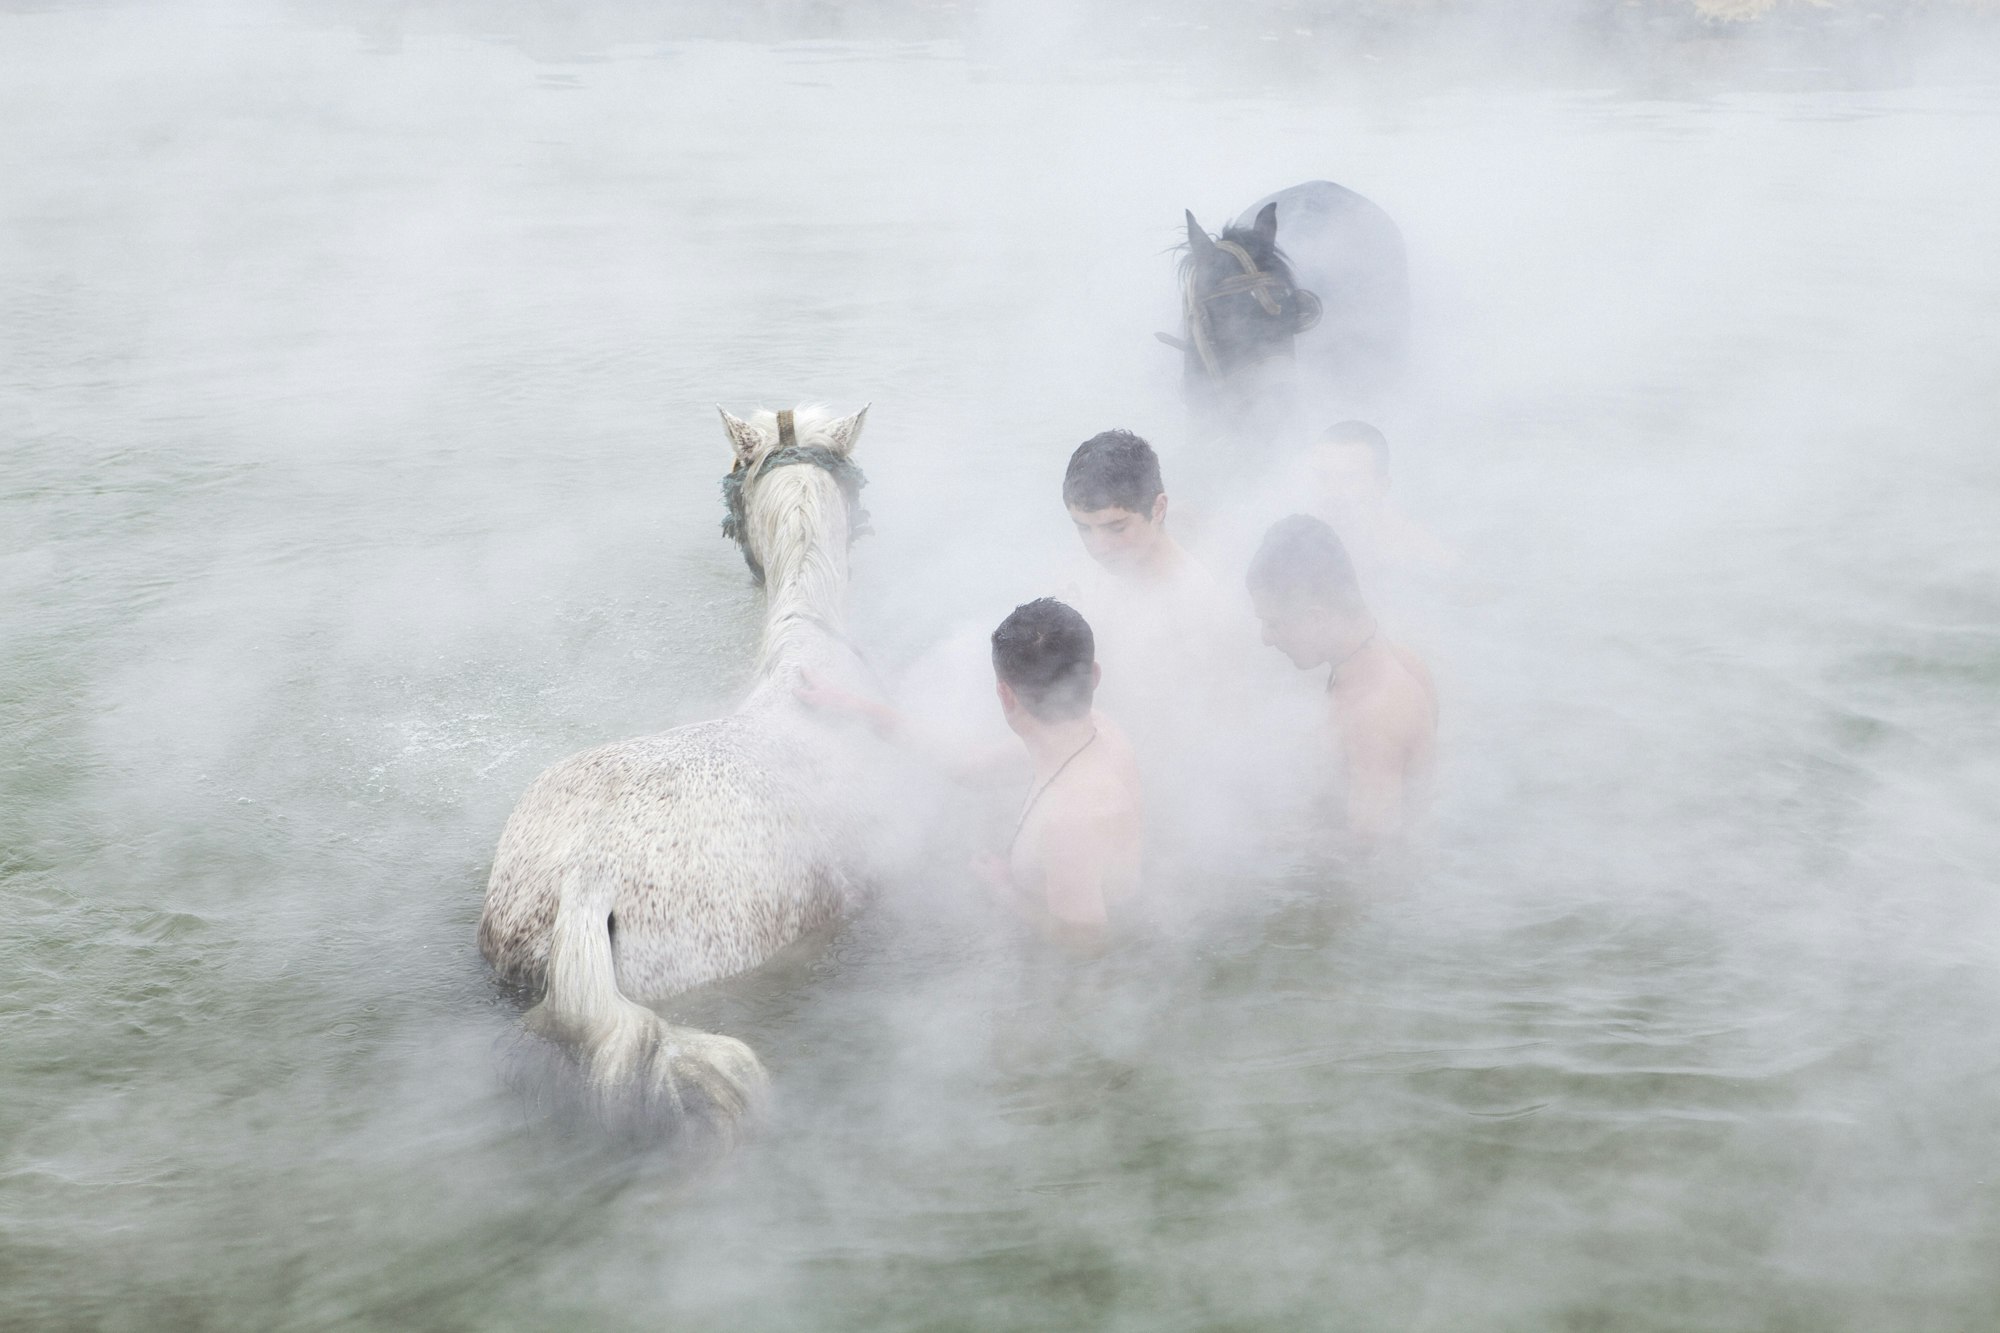 Boys and horses shrouded in mist